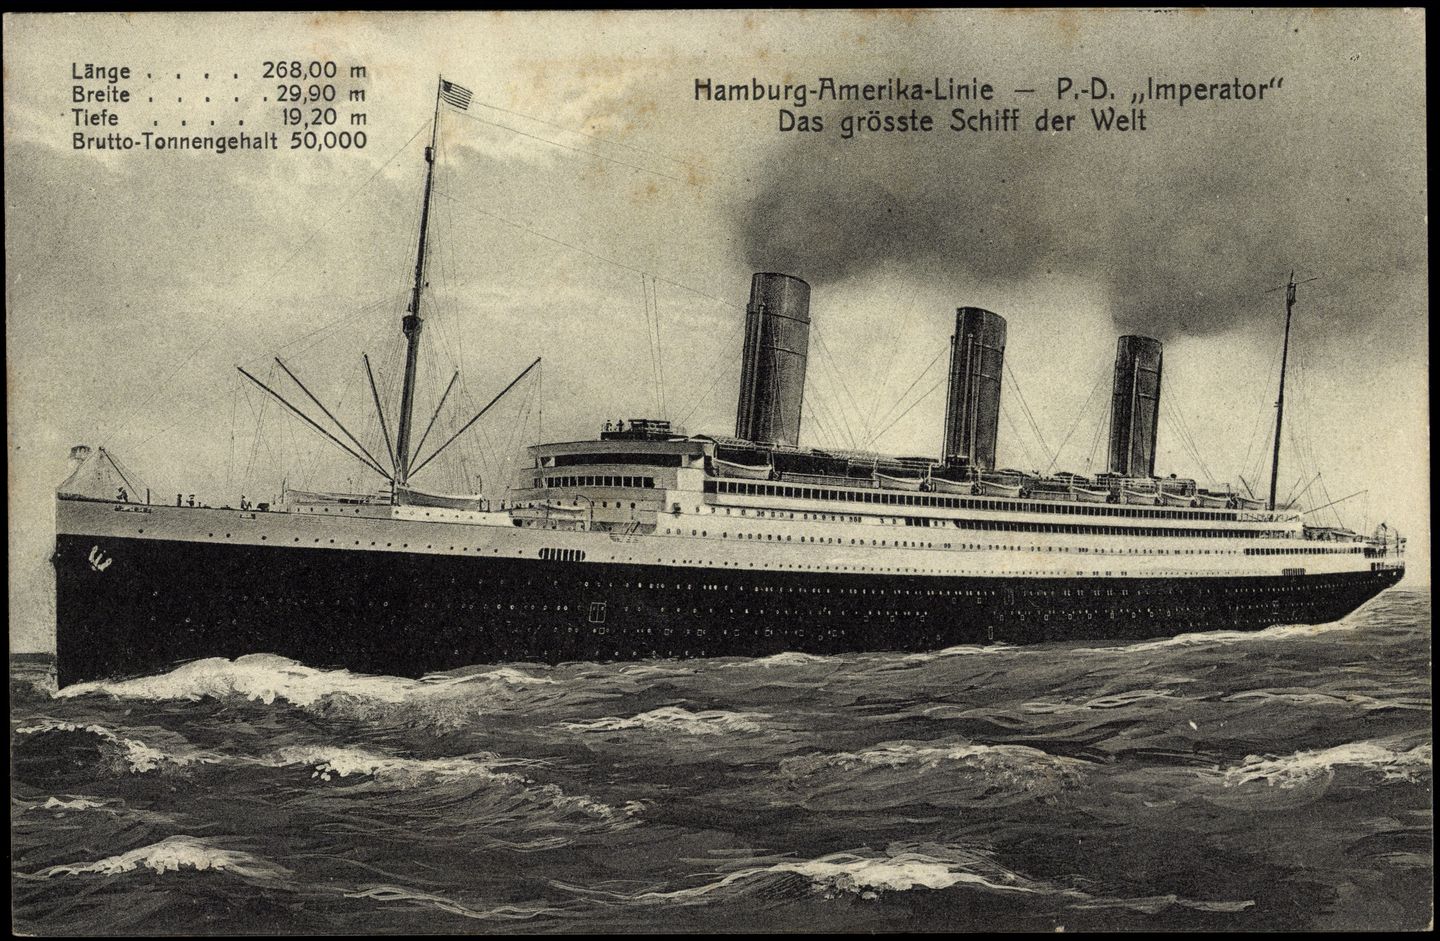 Deutsche Schiffe waren über Jahrzehnte schwimmende Superlative: Noch größer als die "Titanic", die 1912 auf ihrer Jungfernfahrt unterging, geriet 1913 die "Imperator" der Hamburg-America-Linie. Mit 272,7 Metern und erstmals mehr als 50.000 Bruttoregistertonnen (BRT) war das Turbinenschiff das größte Passagierschiff der Welt. 